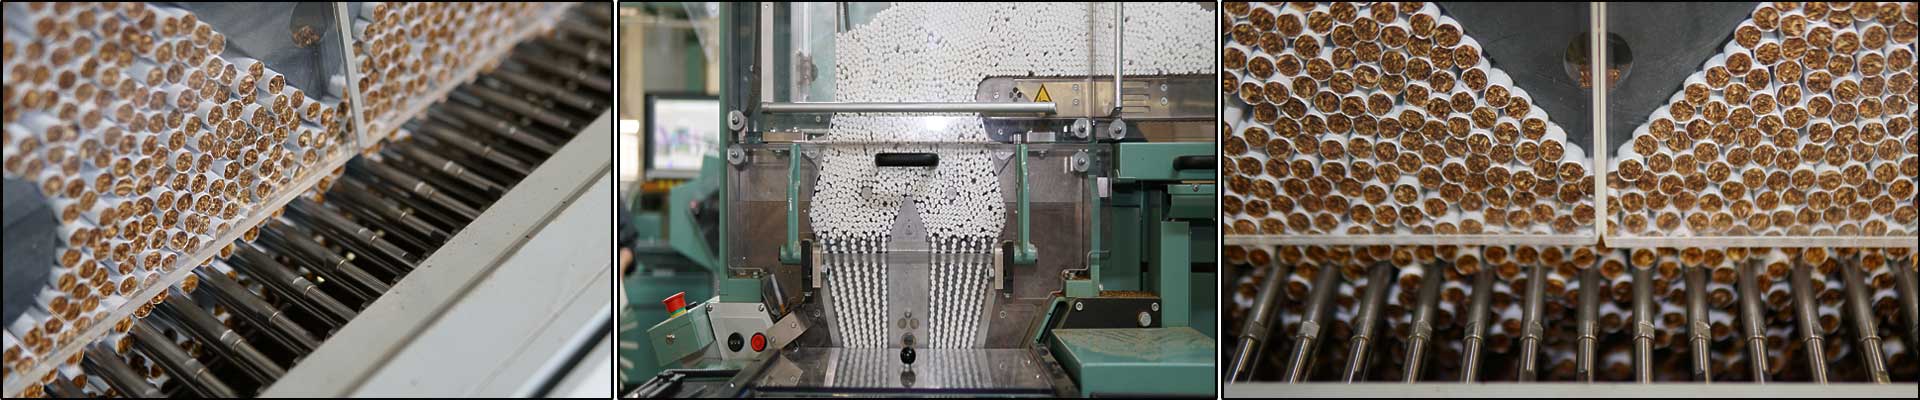 Zigaretten welche maschinell in einer Fabrik hergestellt werden